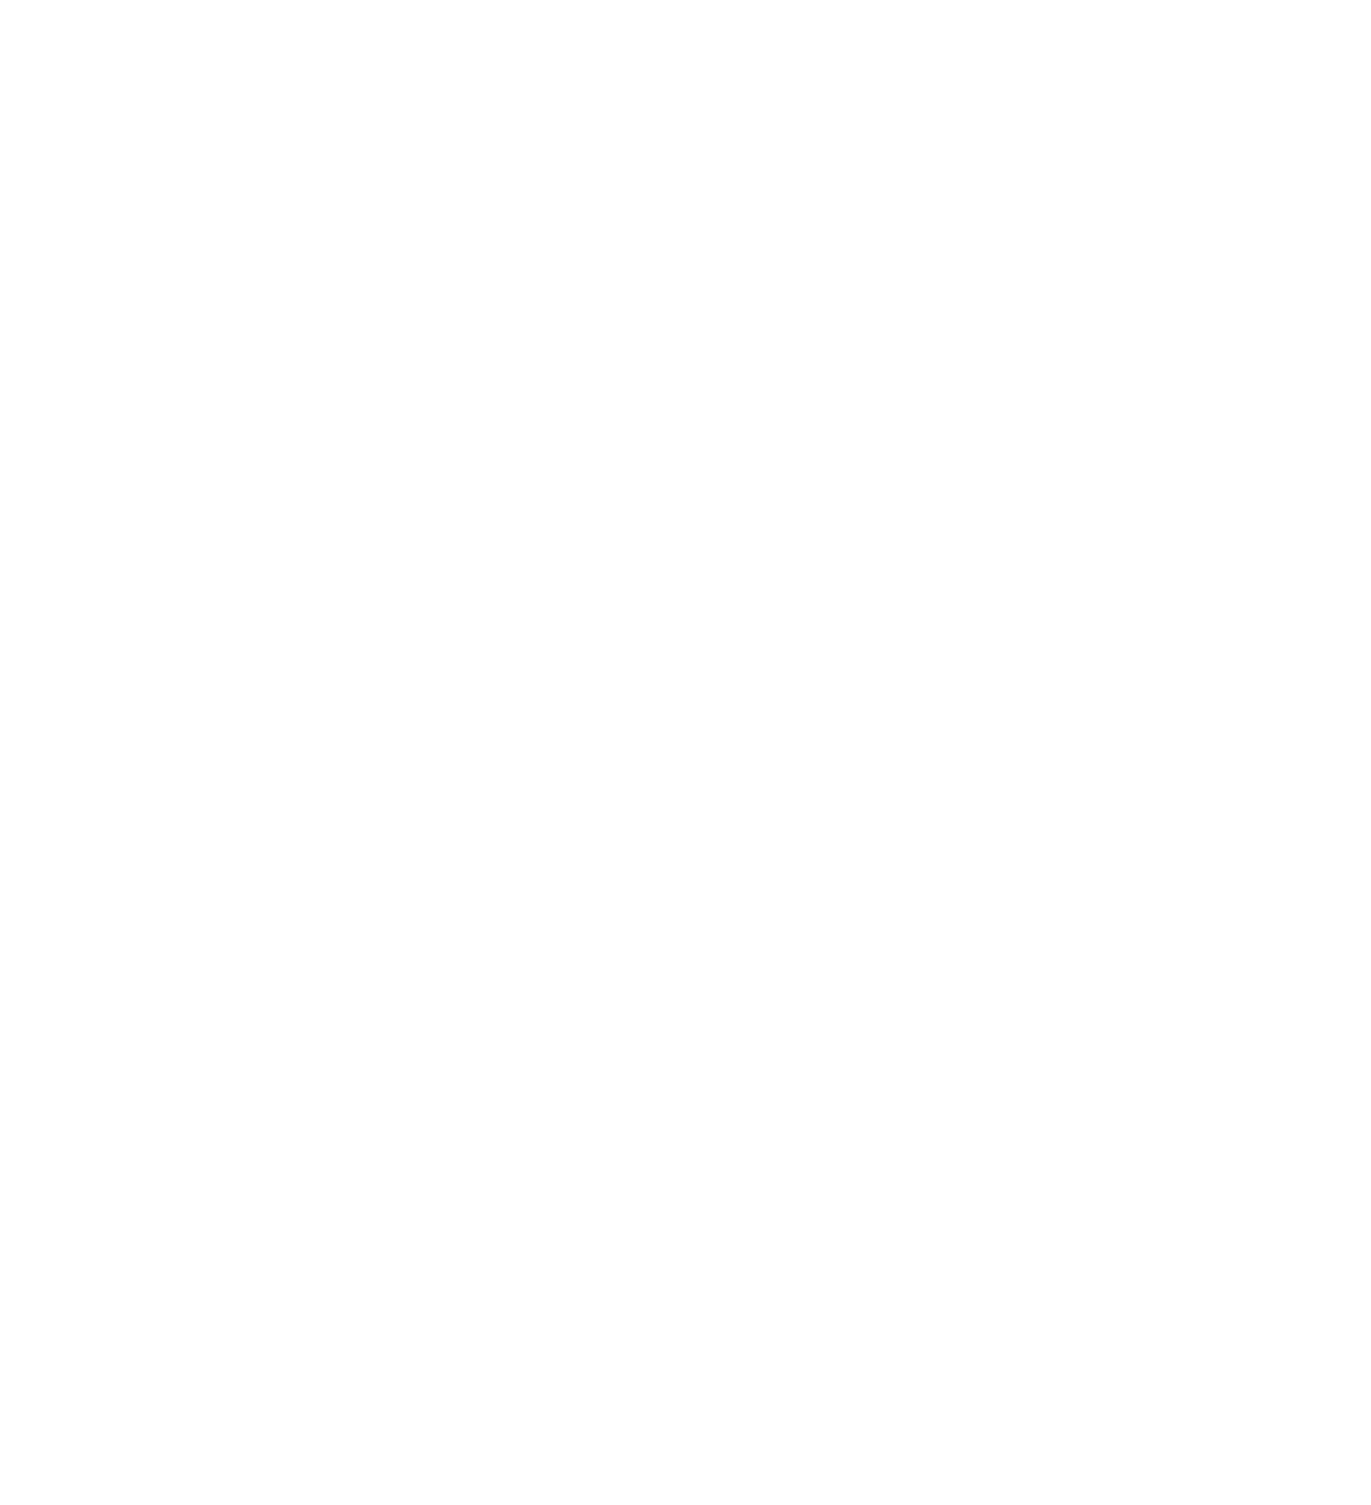 Echo Park Creative Psychology, Inc.